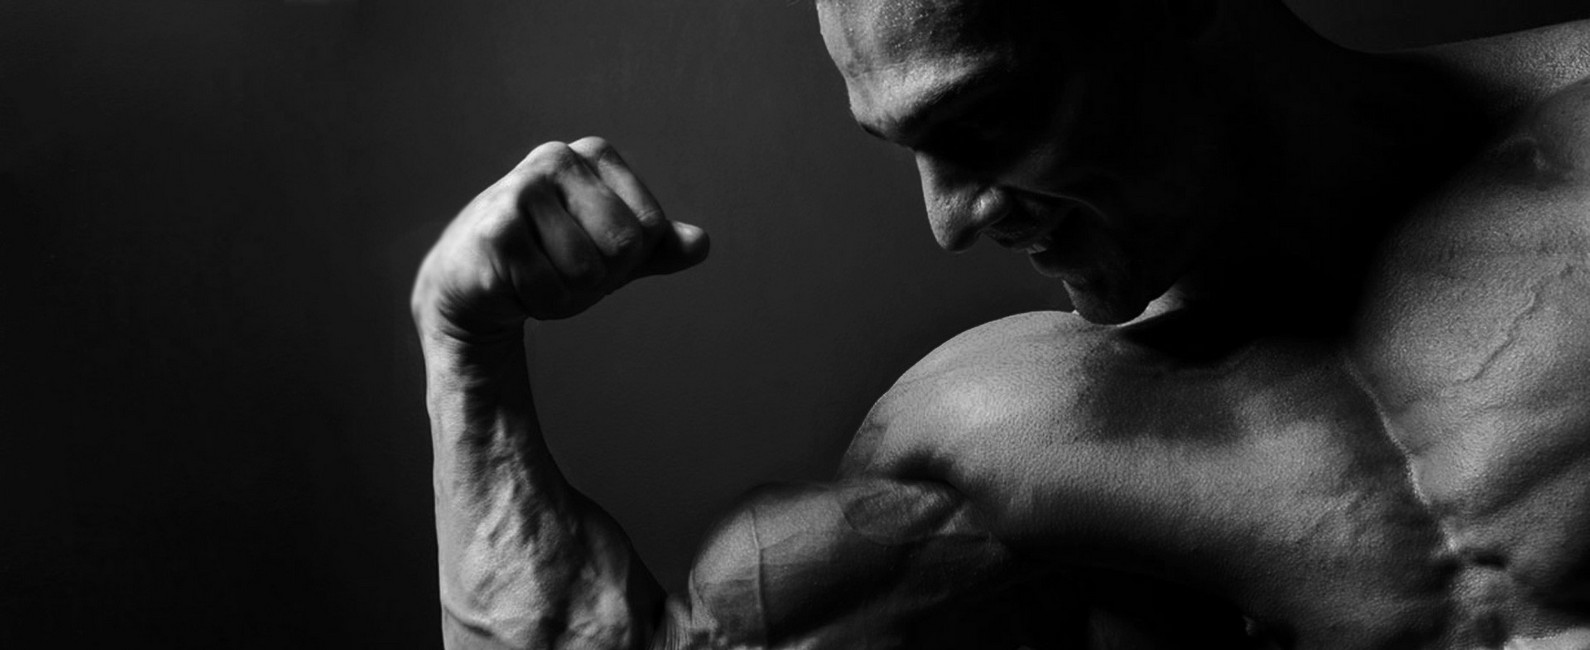 %e6%9c%aa%e5%88%86%e9%a1%9e - - Buy anabolic steroids usa, images of guys on steroids